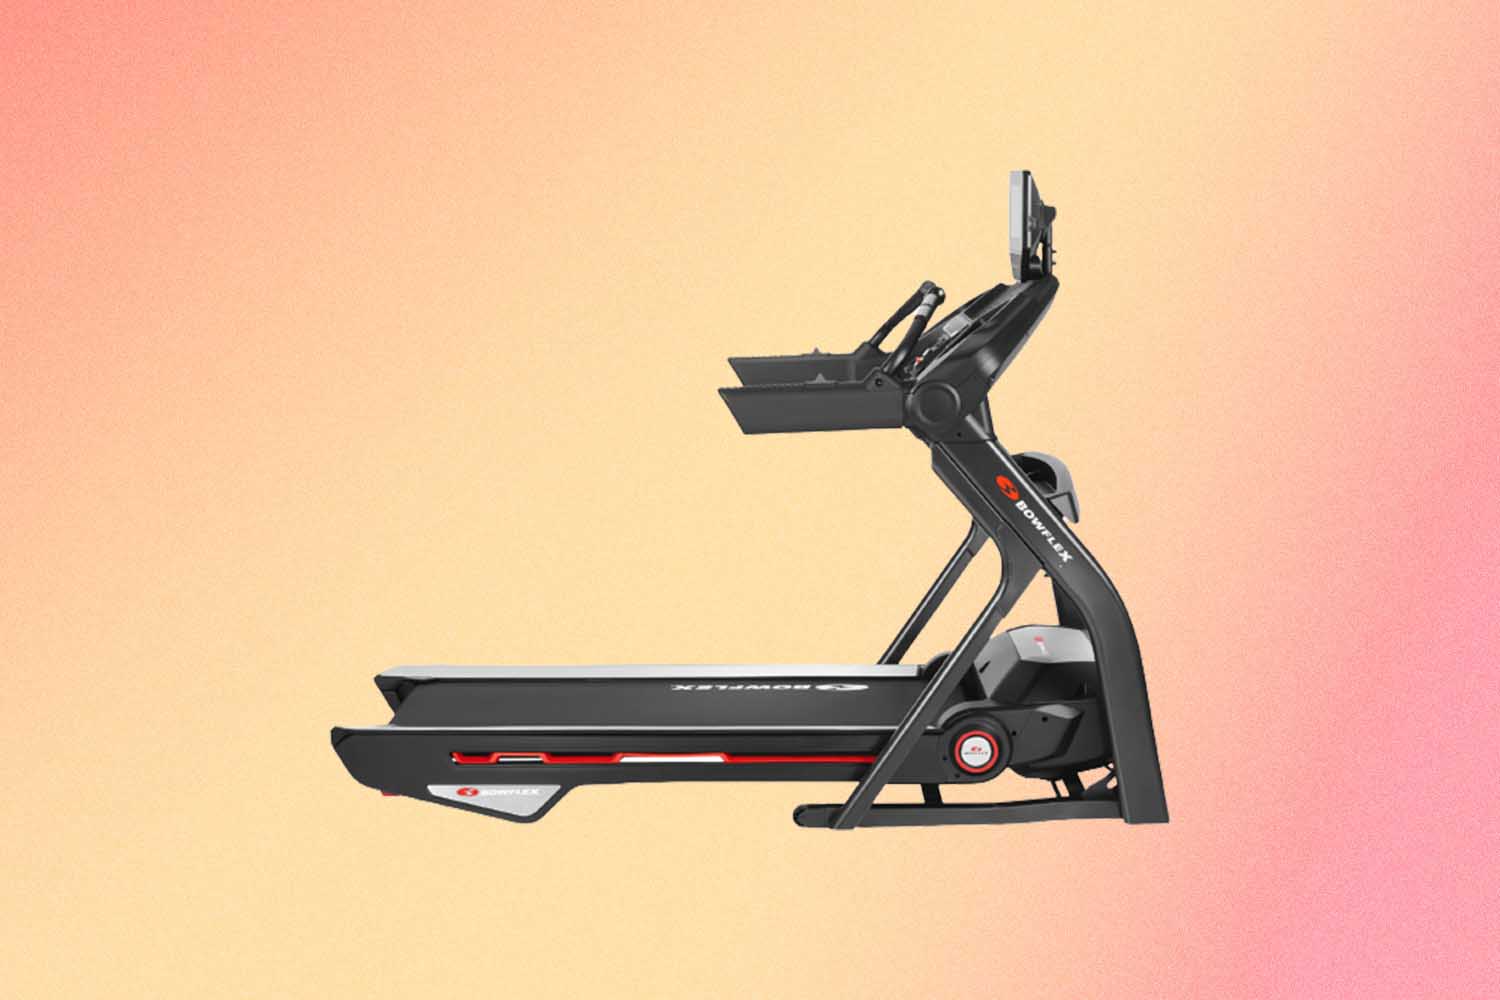 Bowflex Treadmill 10